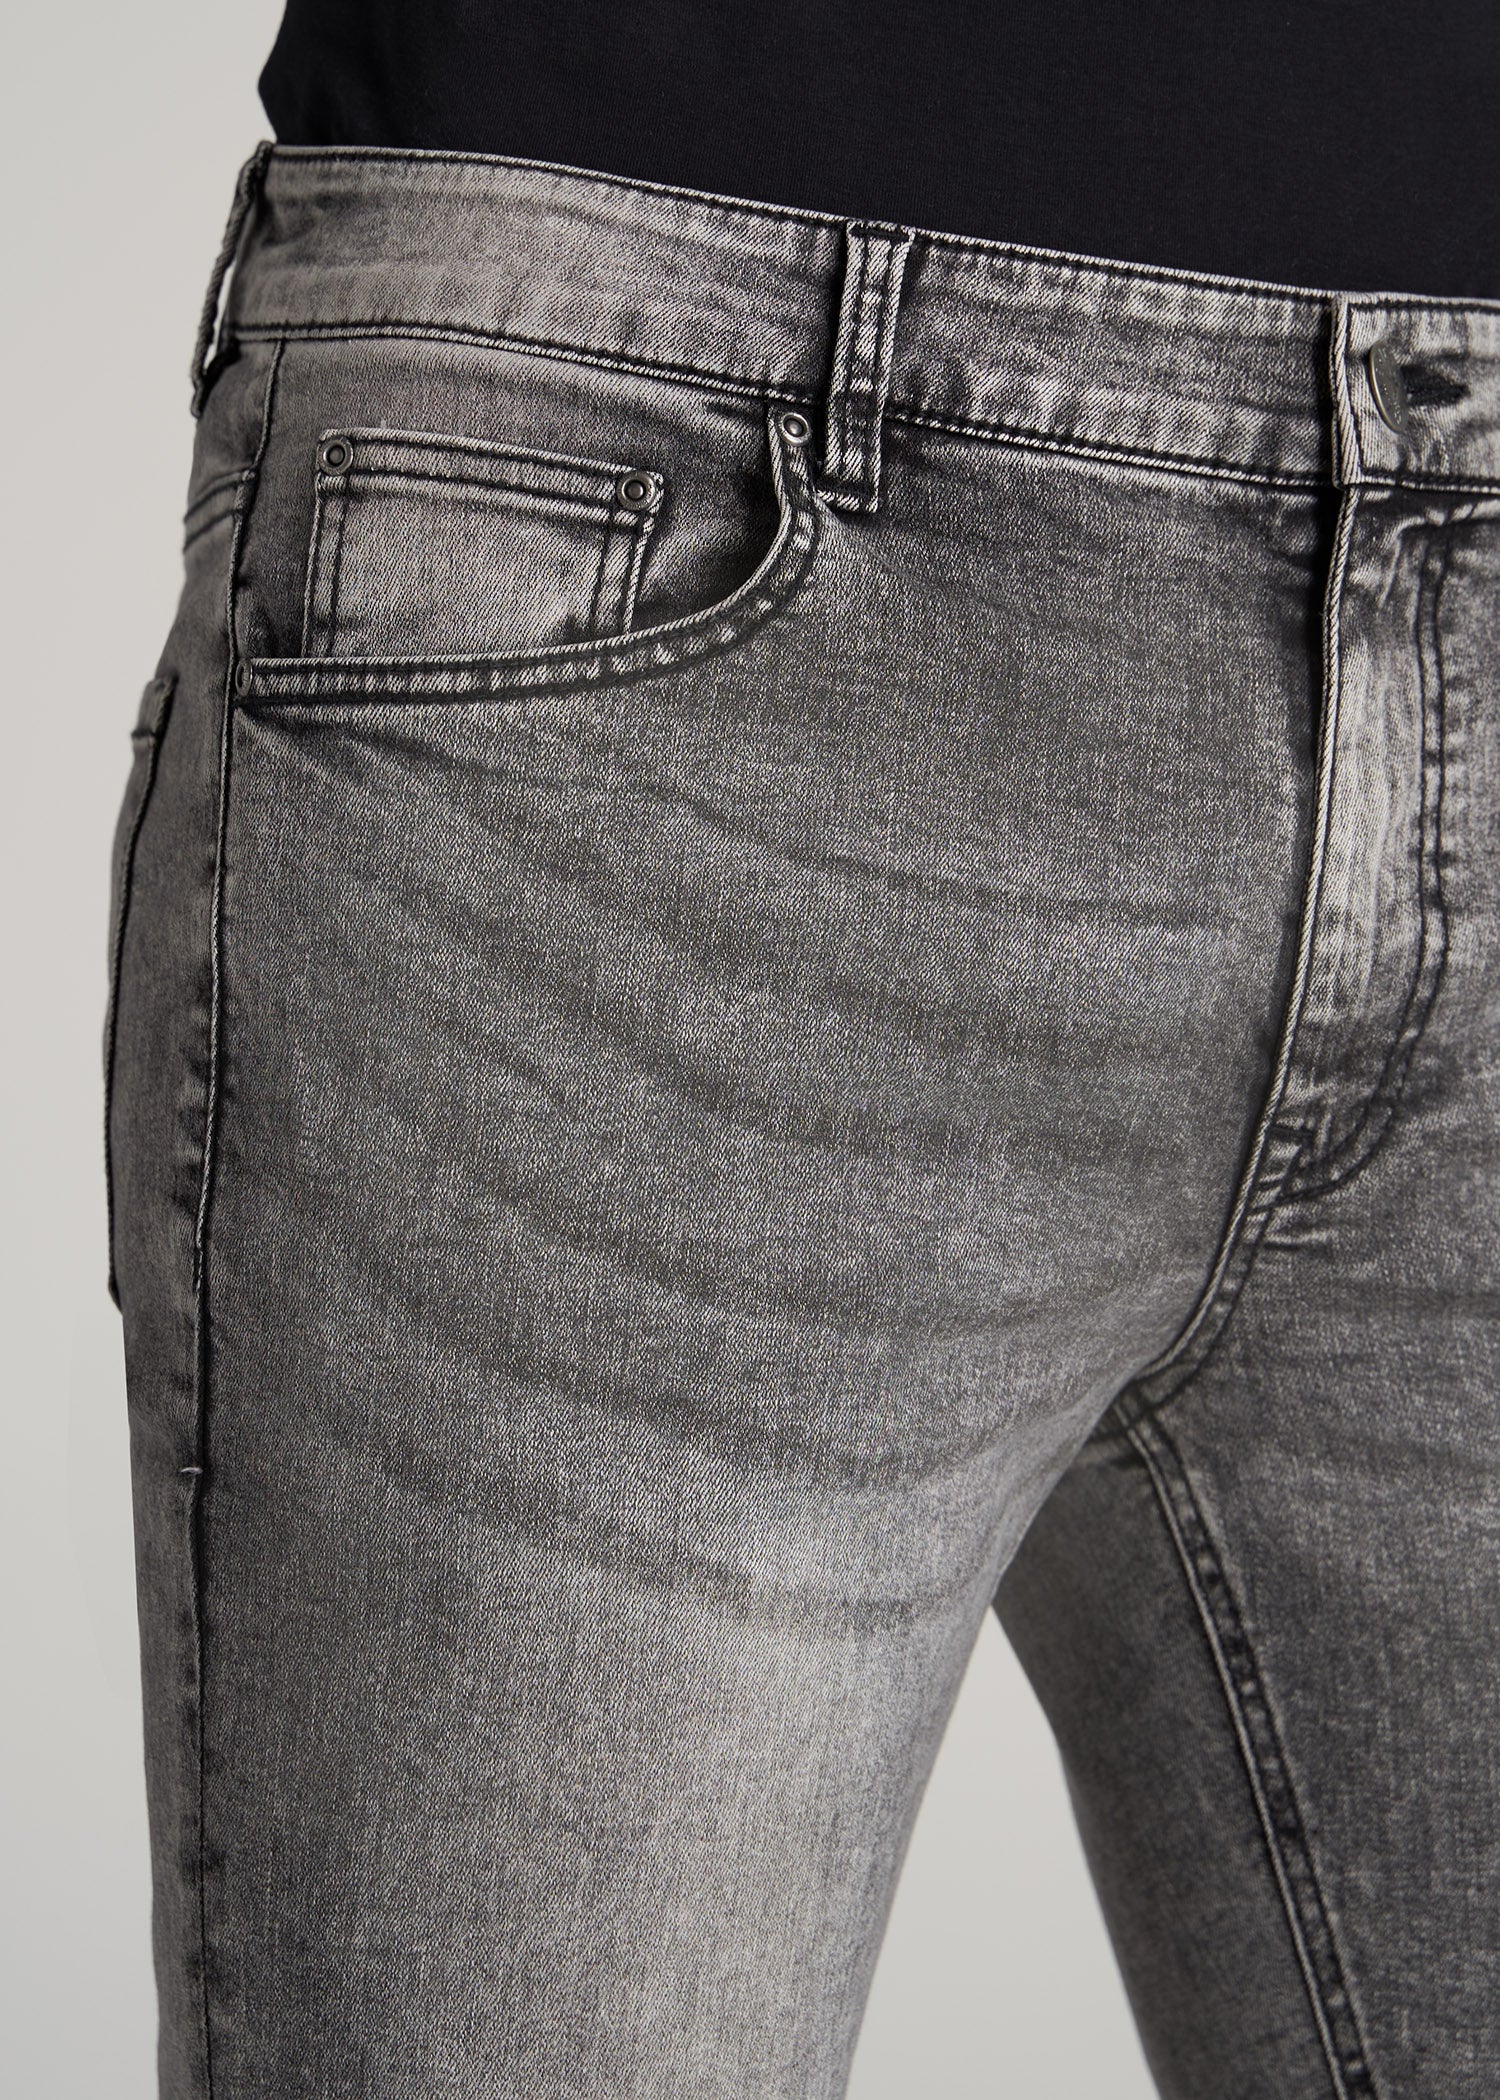 Black Faded Jeans American Mens: – Faded Tall Tall Skinny Black Jeans Travis